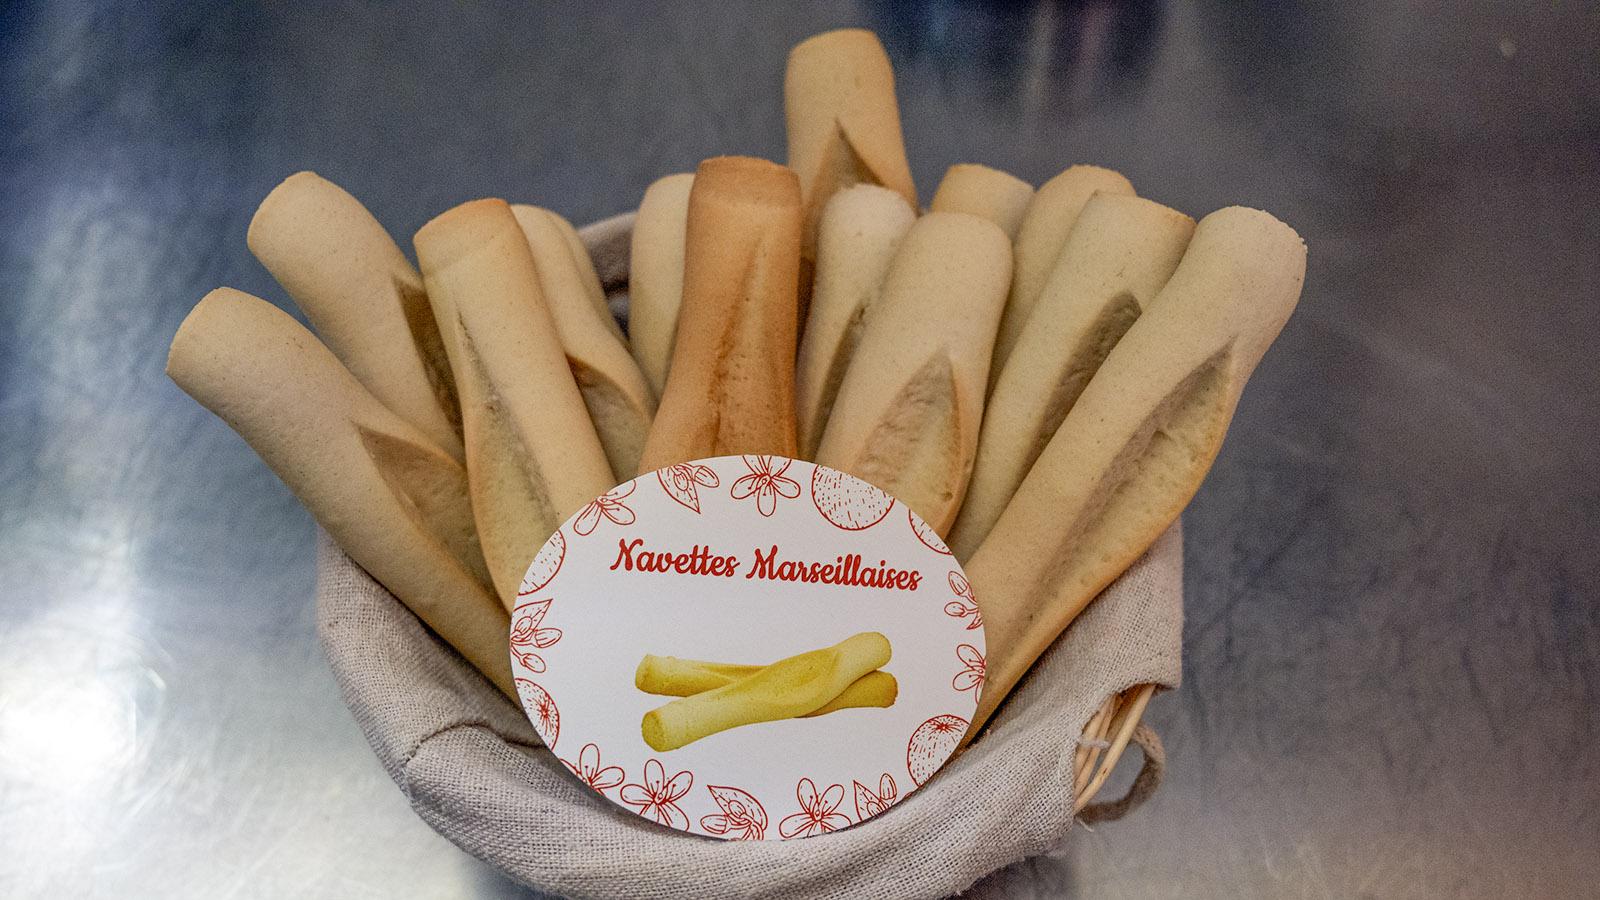 Knusprige Navettes-Kekse aus Marseille. Foto: Hilke Maunder